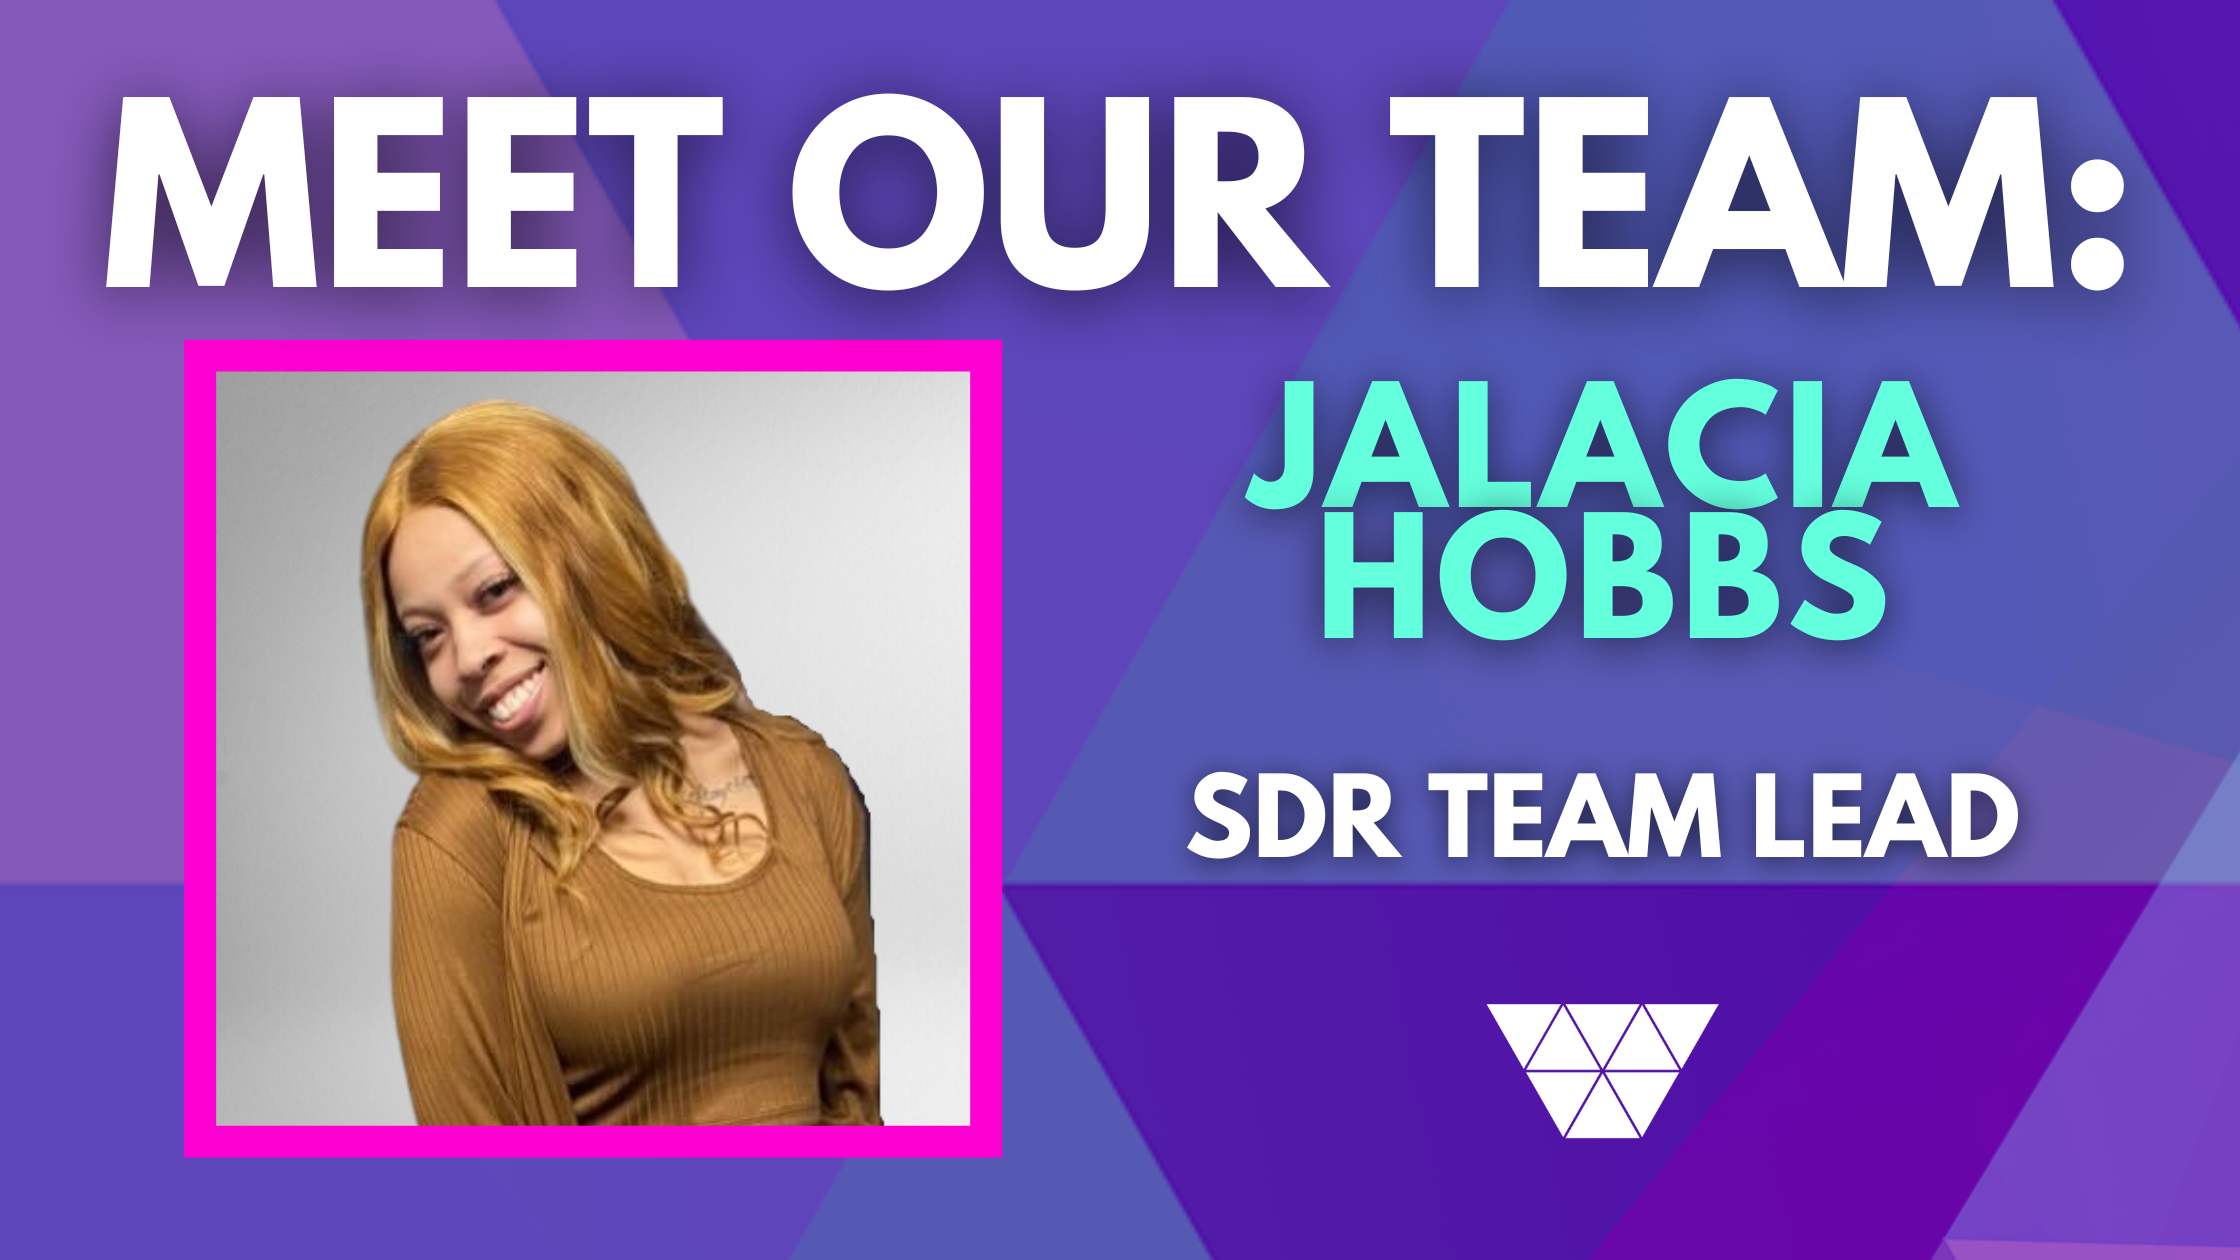 image of jalacia hobbs SDR team lead